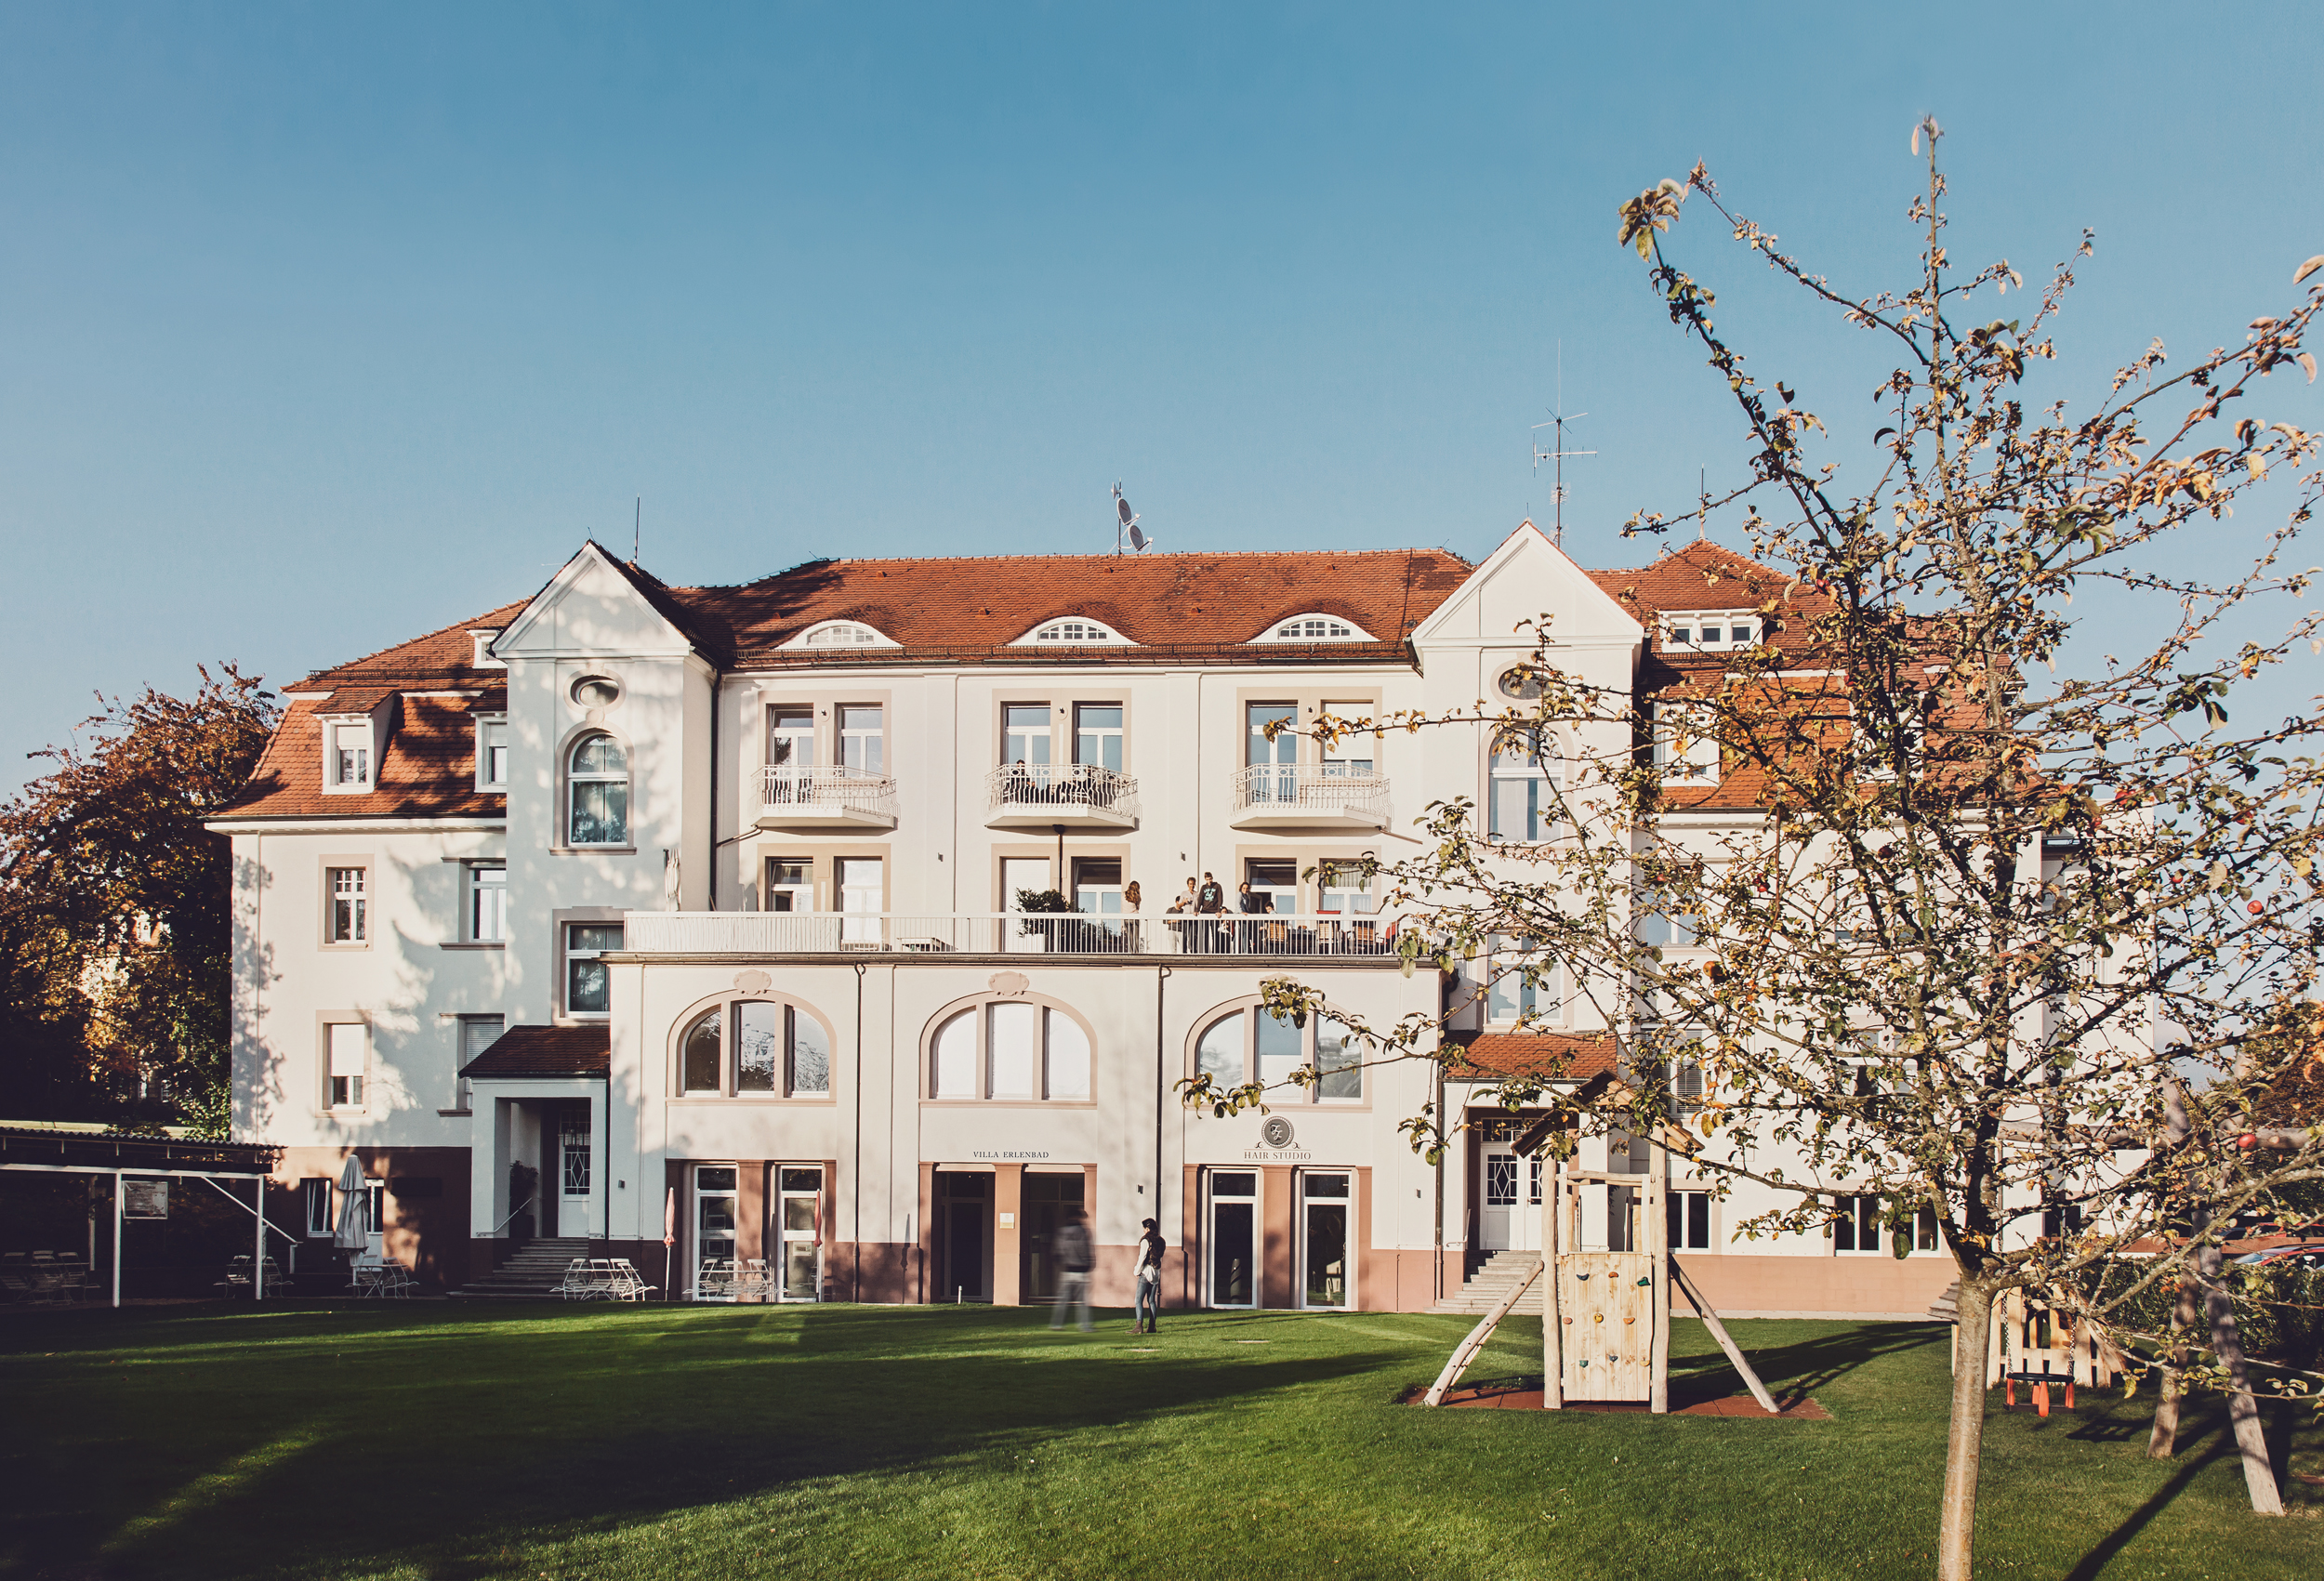 Hotel Villa Erlenbad, Sasbach. 
